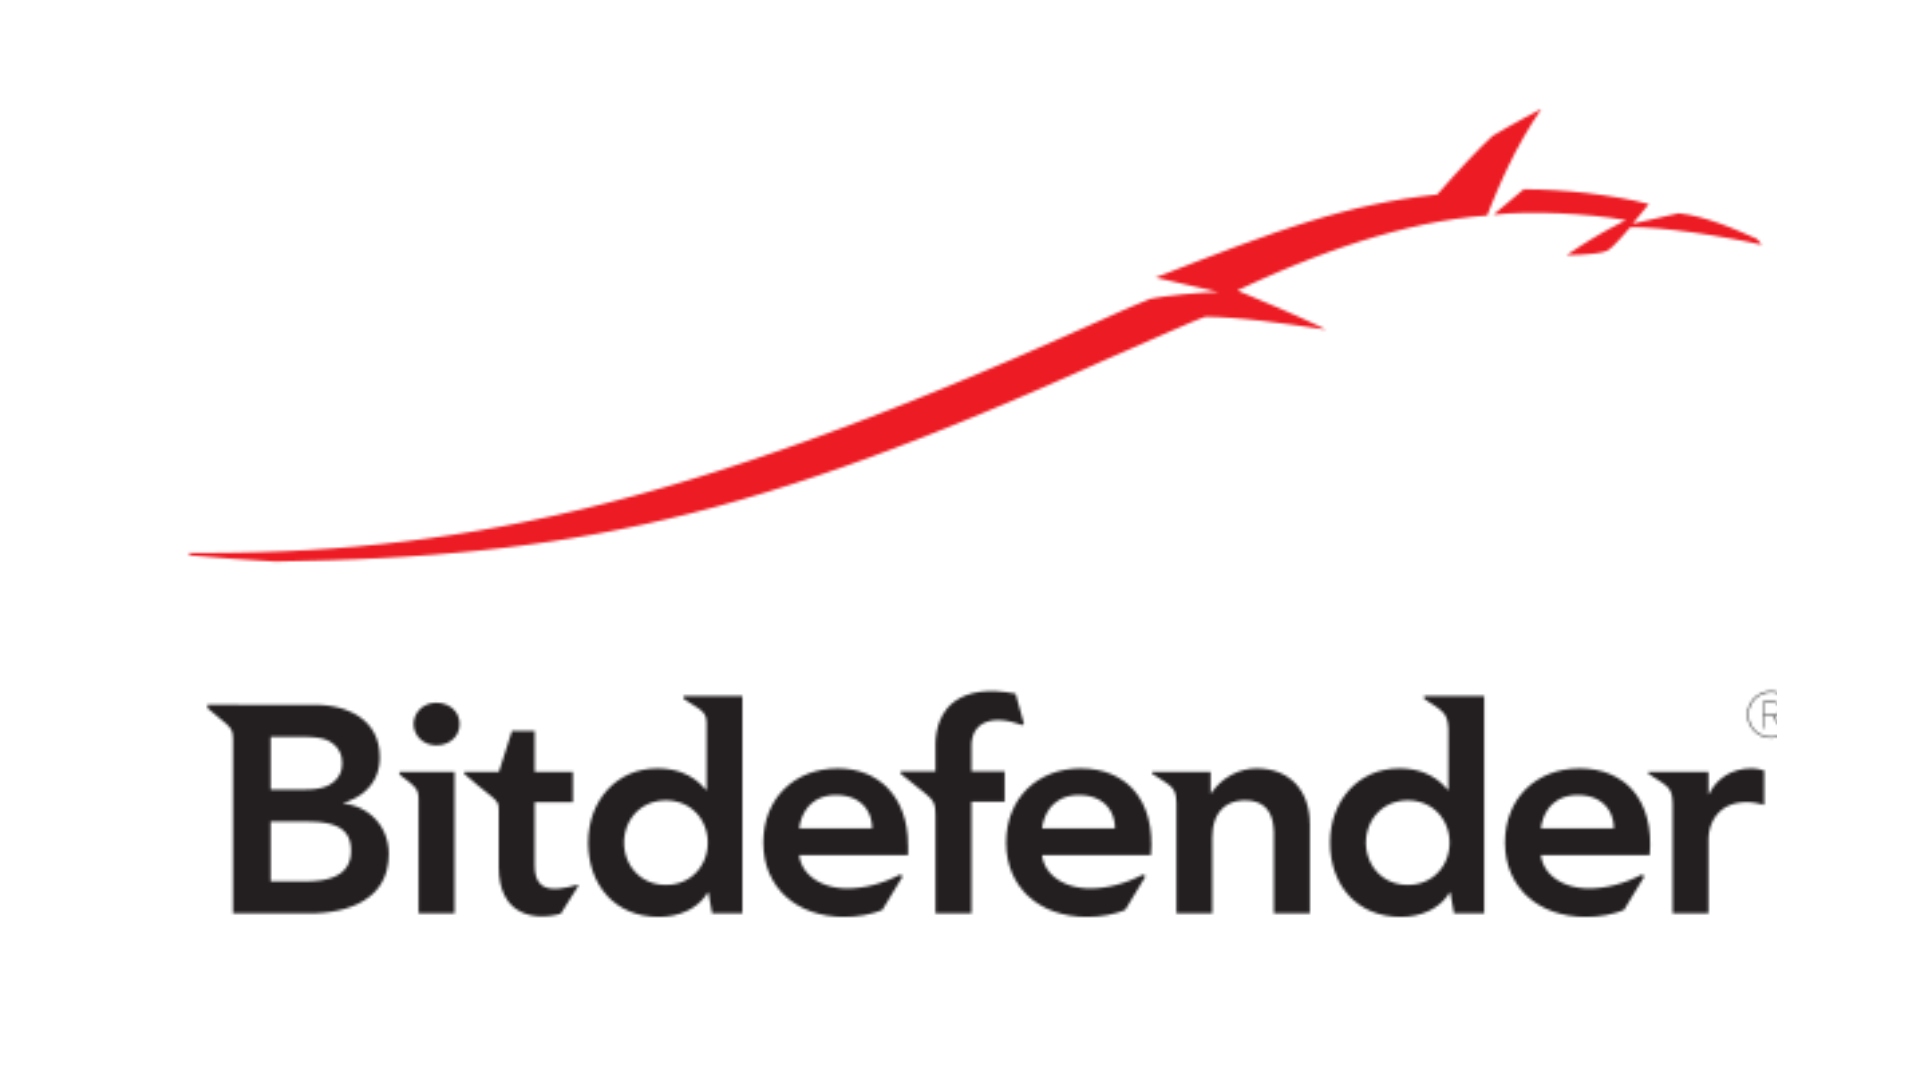 Найкращий антивірус для ПК - Bitdefender. Його логотип знаходиться на білому тлі